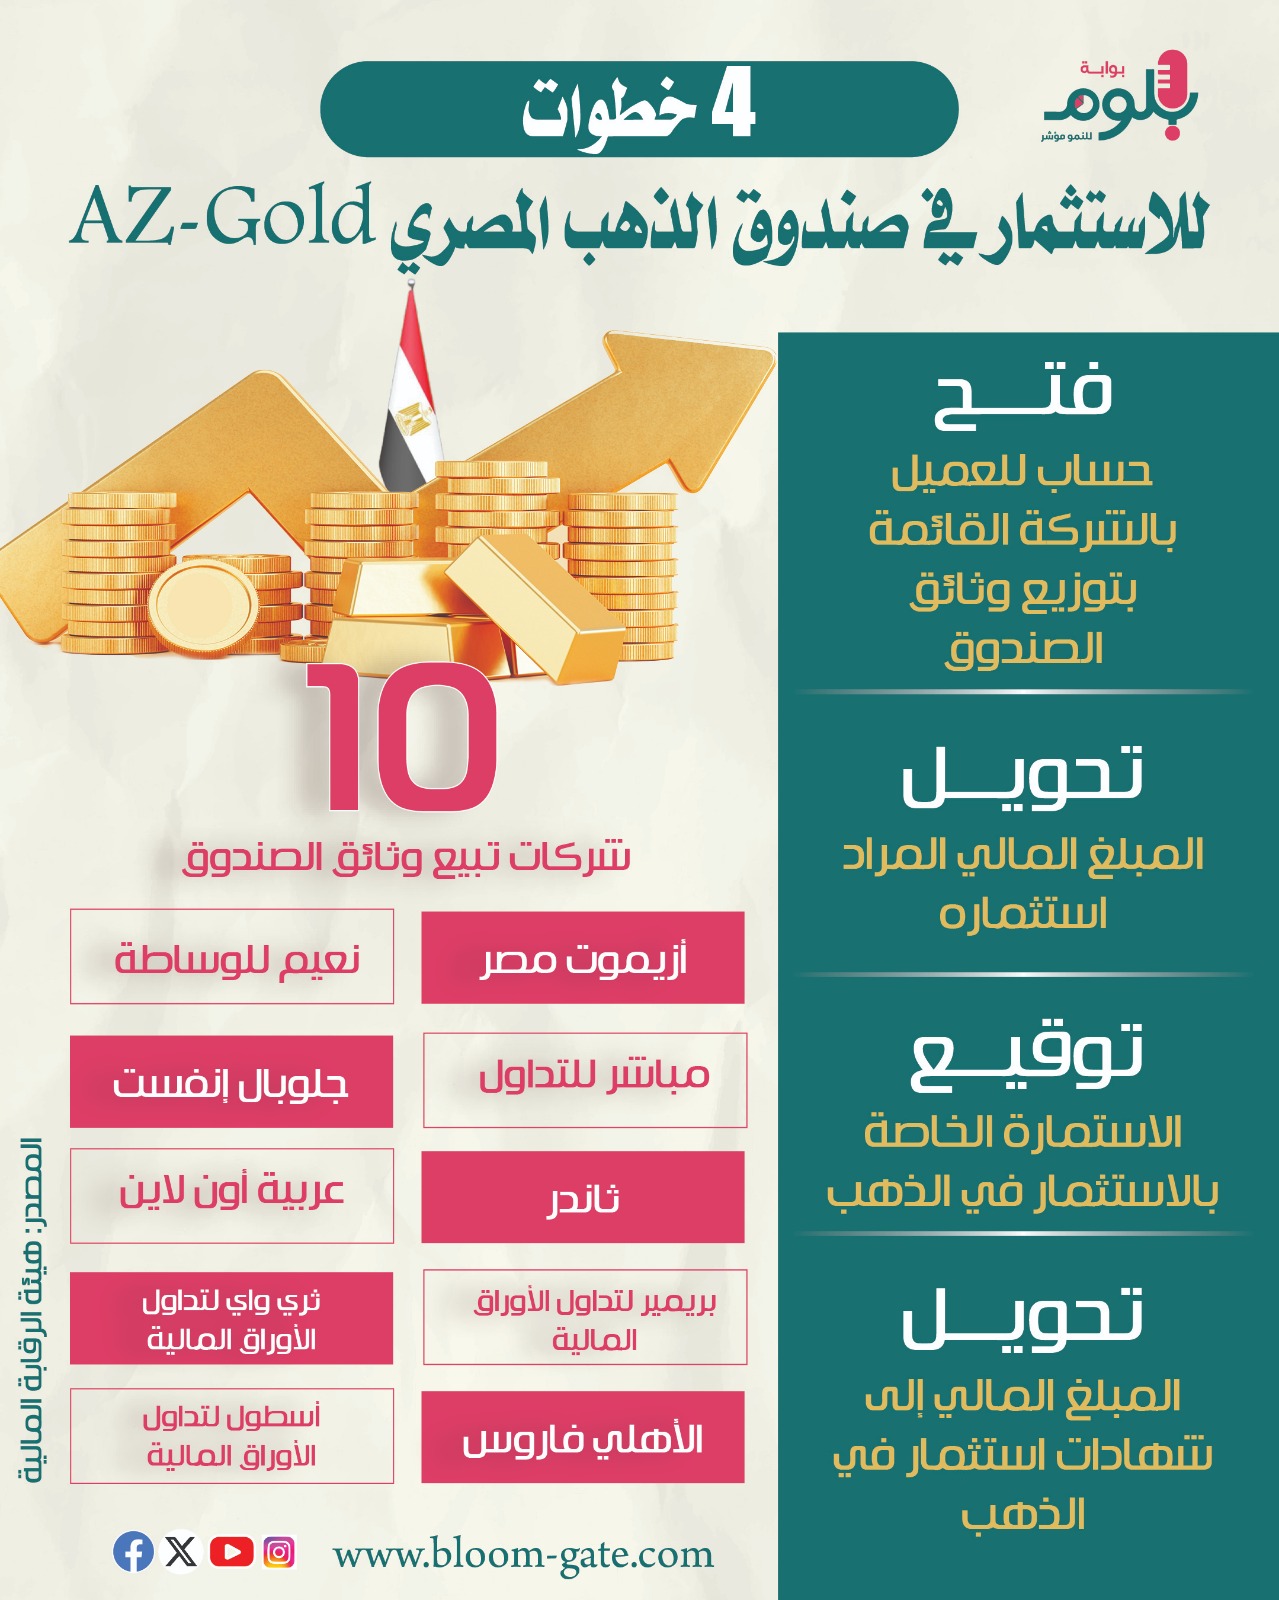 4 خطوات للاستثمار في صندوق الذهب 